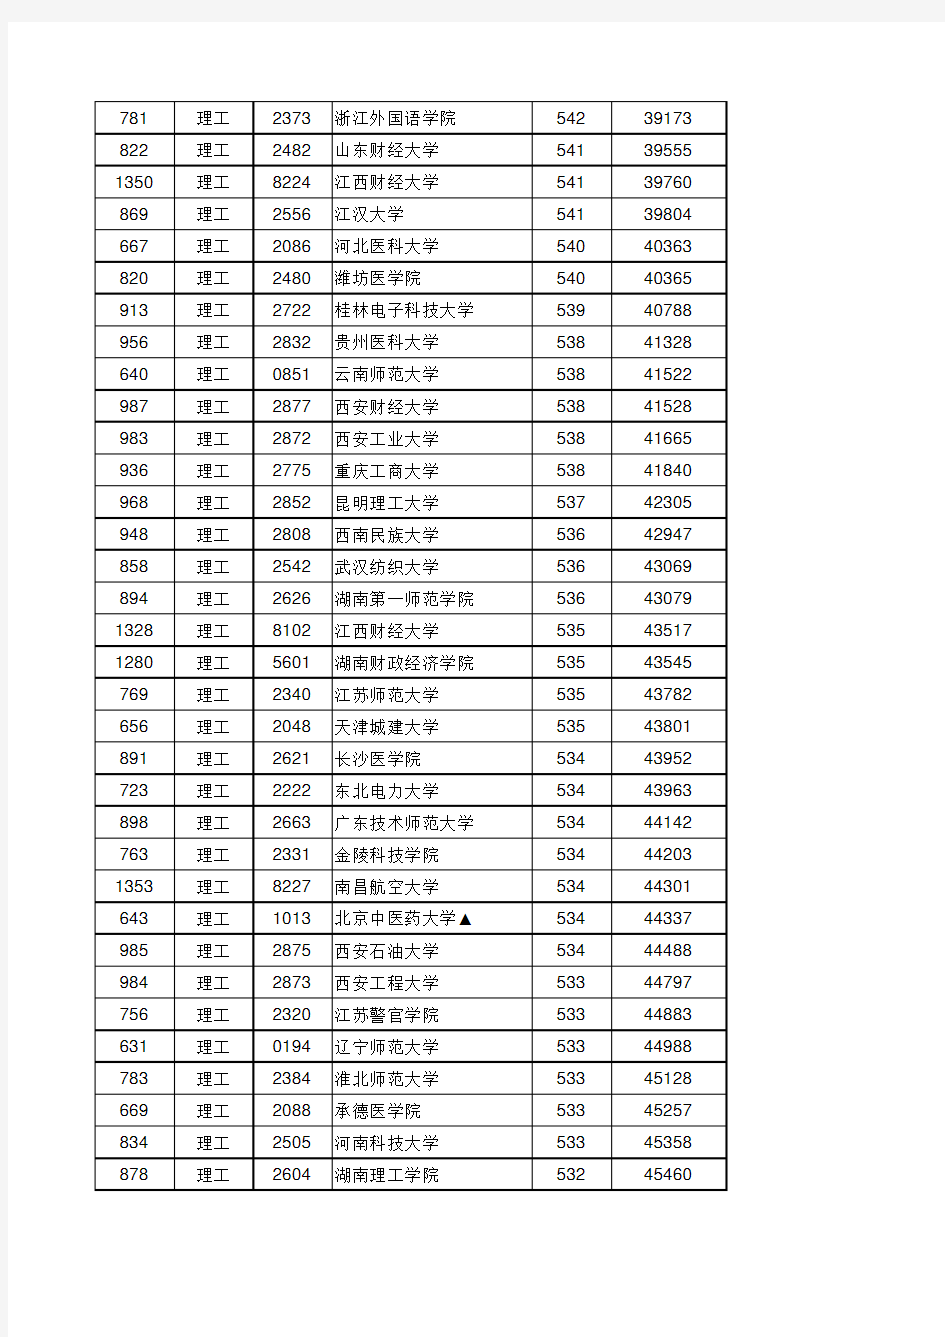 江西省2020年普通高校招生第二批本科投档情况统计表(理工类)